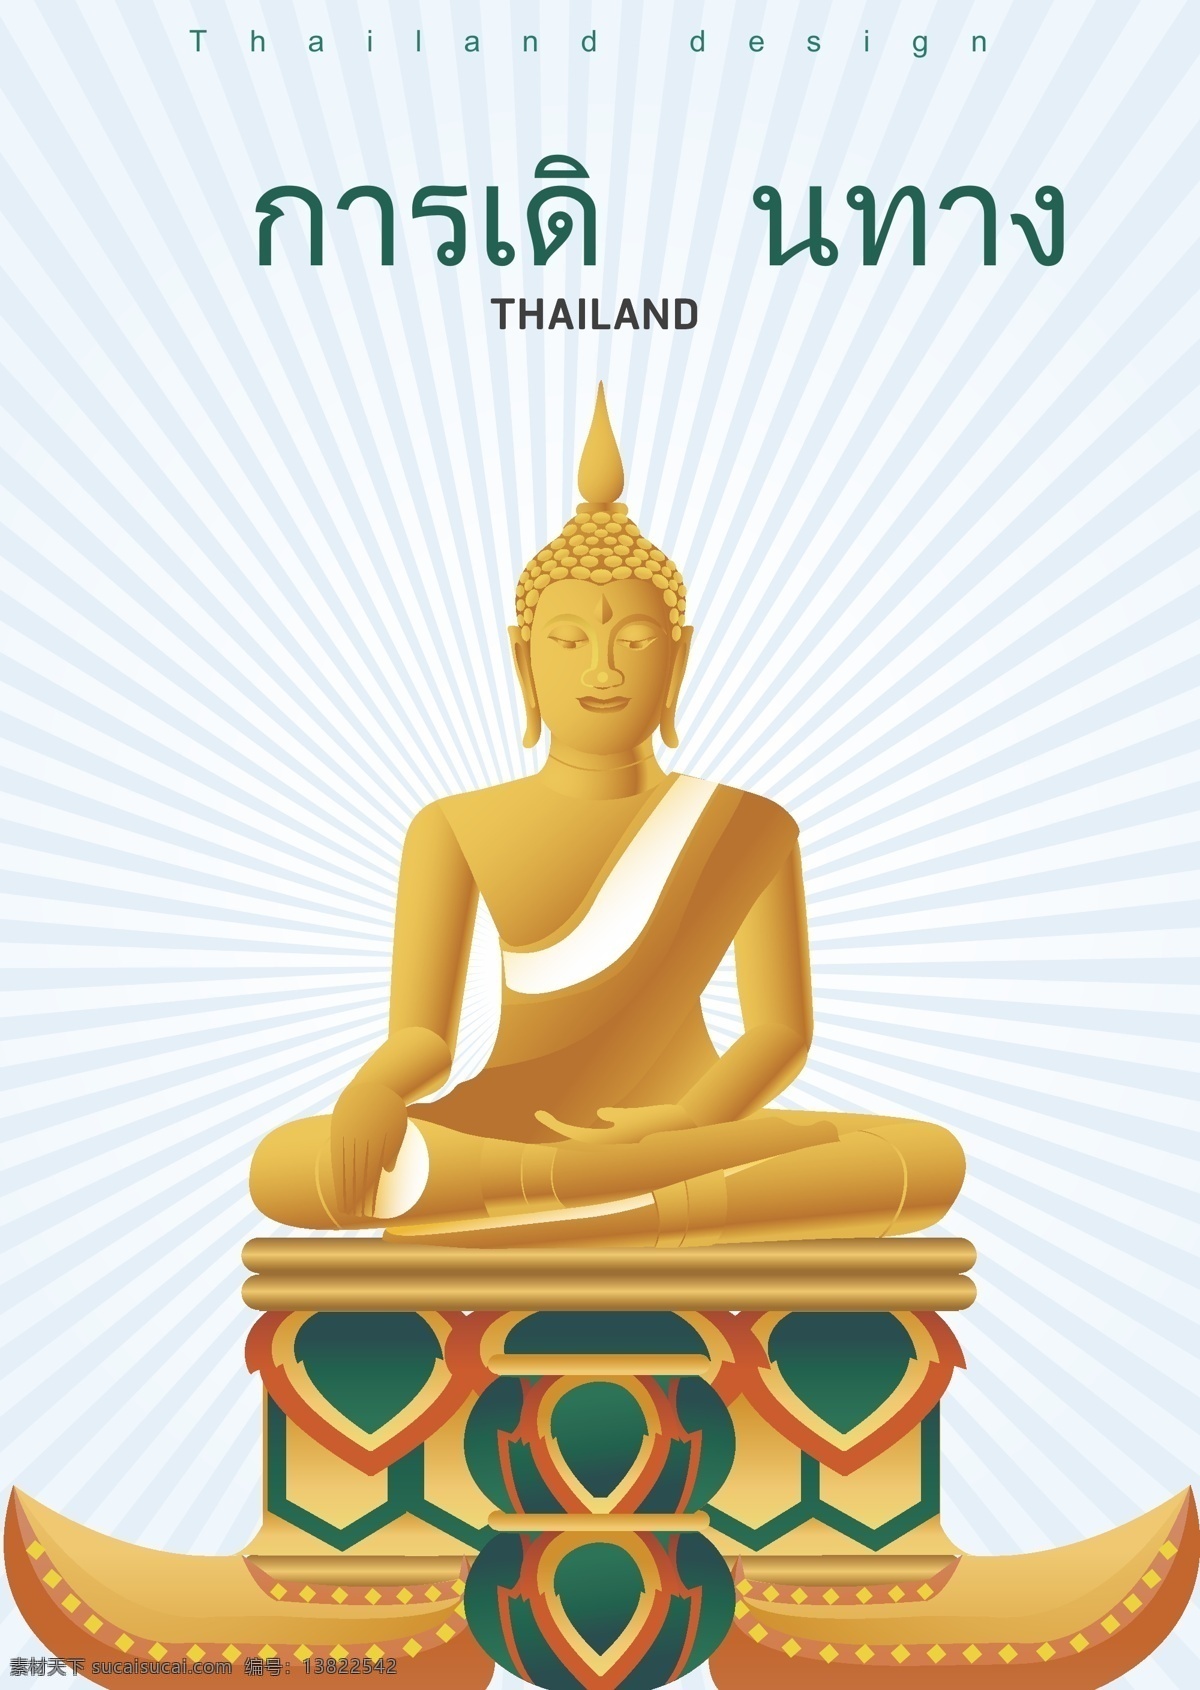 旅程牧师 旅程 僧 泰国传统土 绿色团队 特罗海报 广场花园 手册